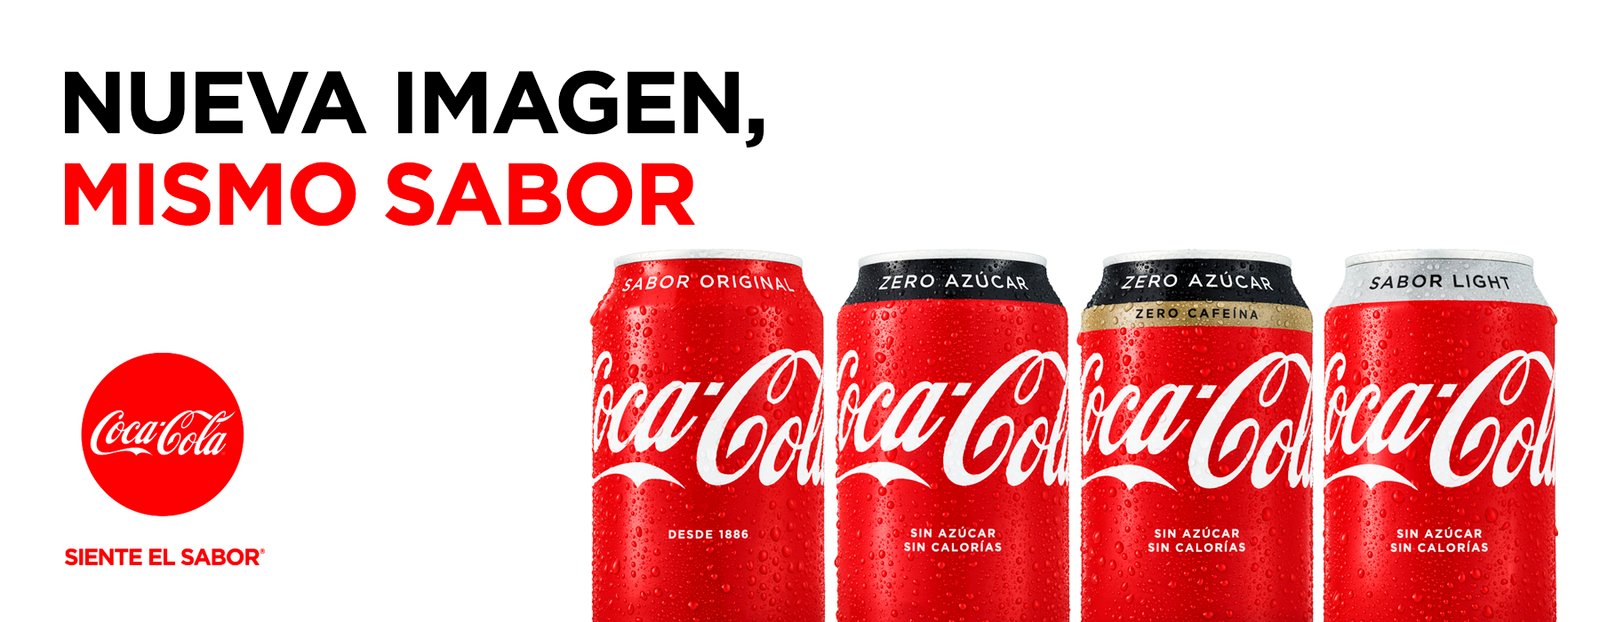 nueva-imagen-mismo-sabor-coca-cola-branding-marketing-iliciti